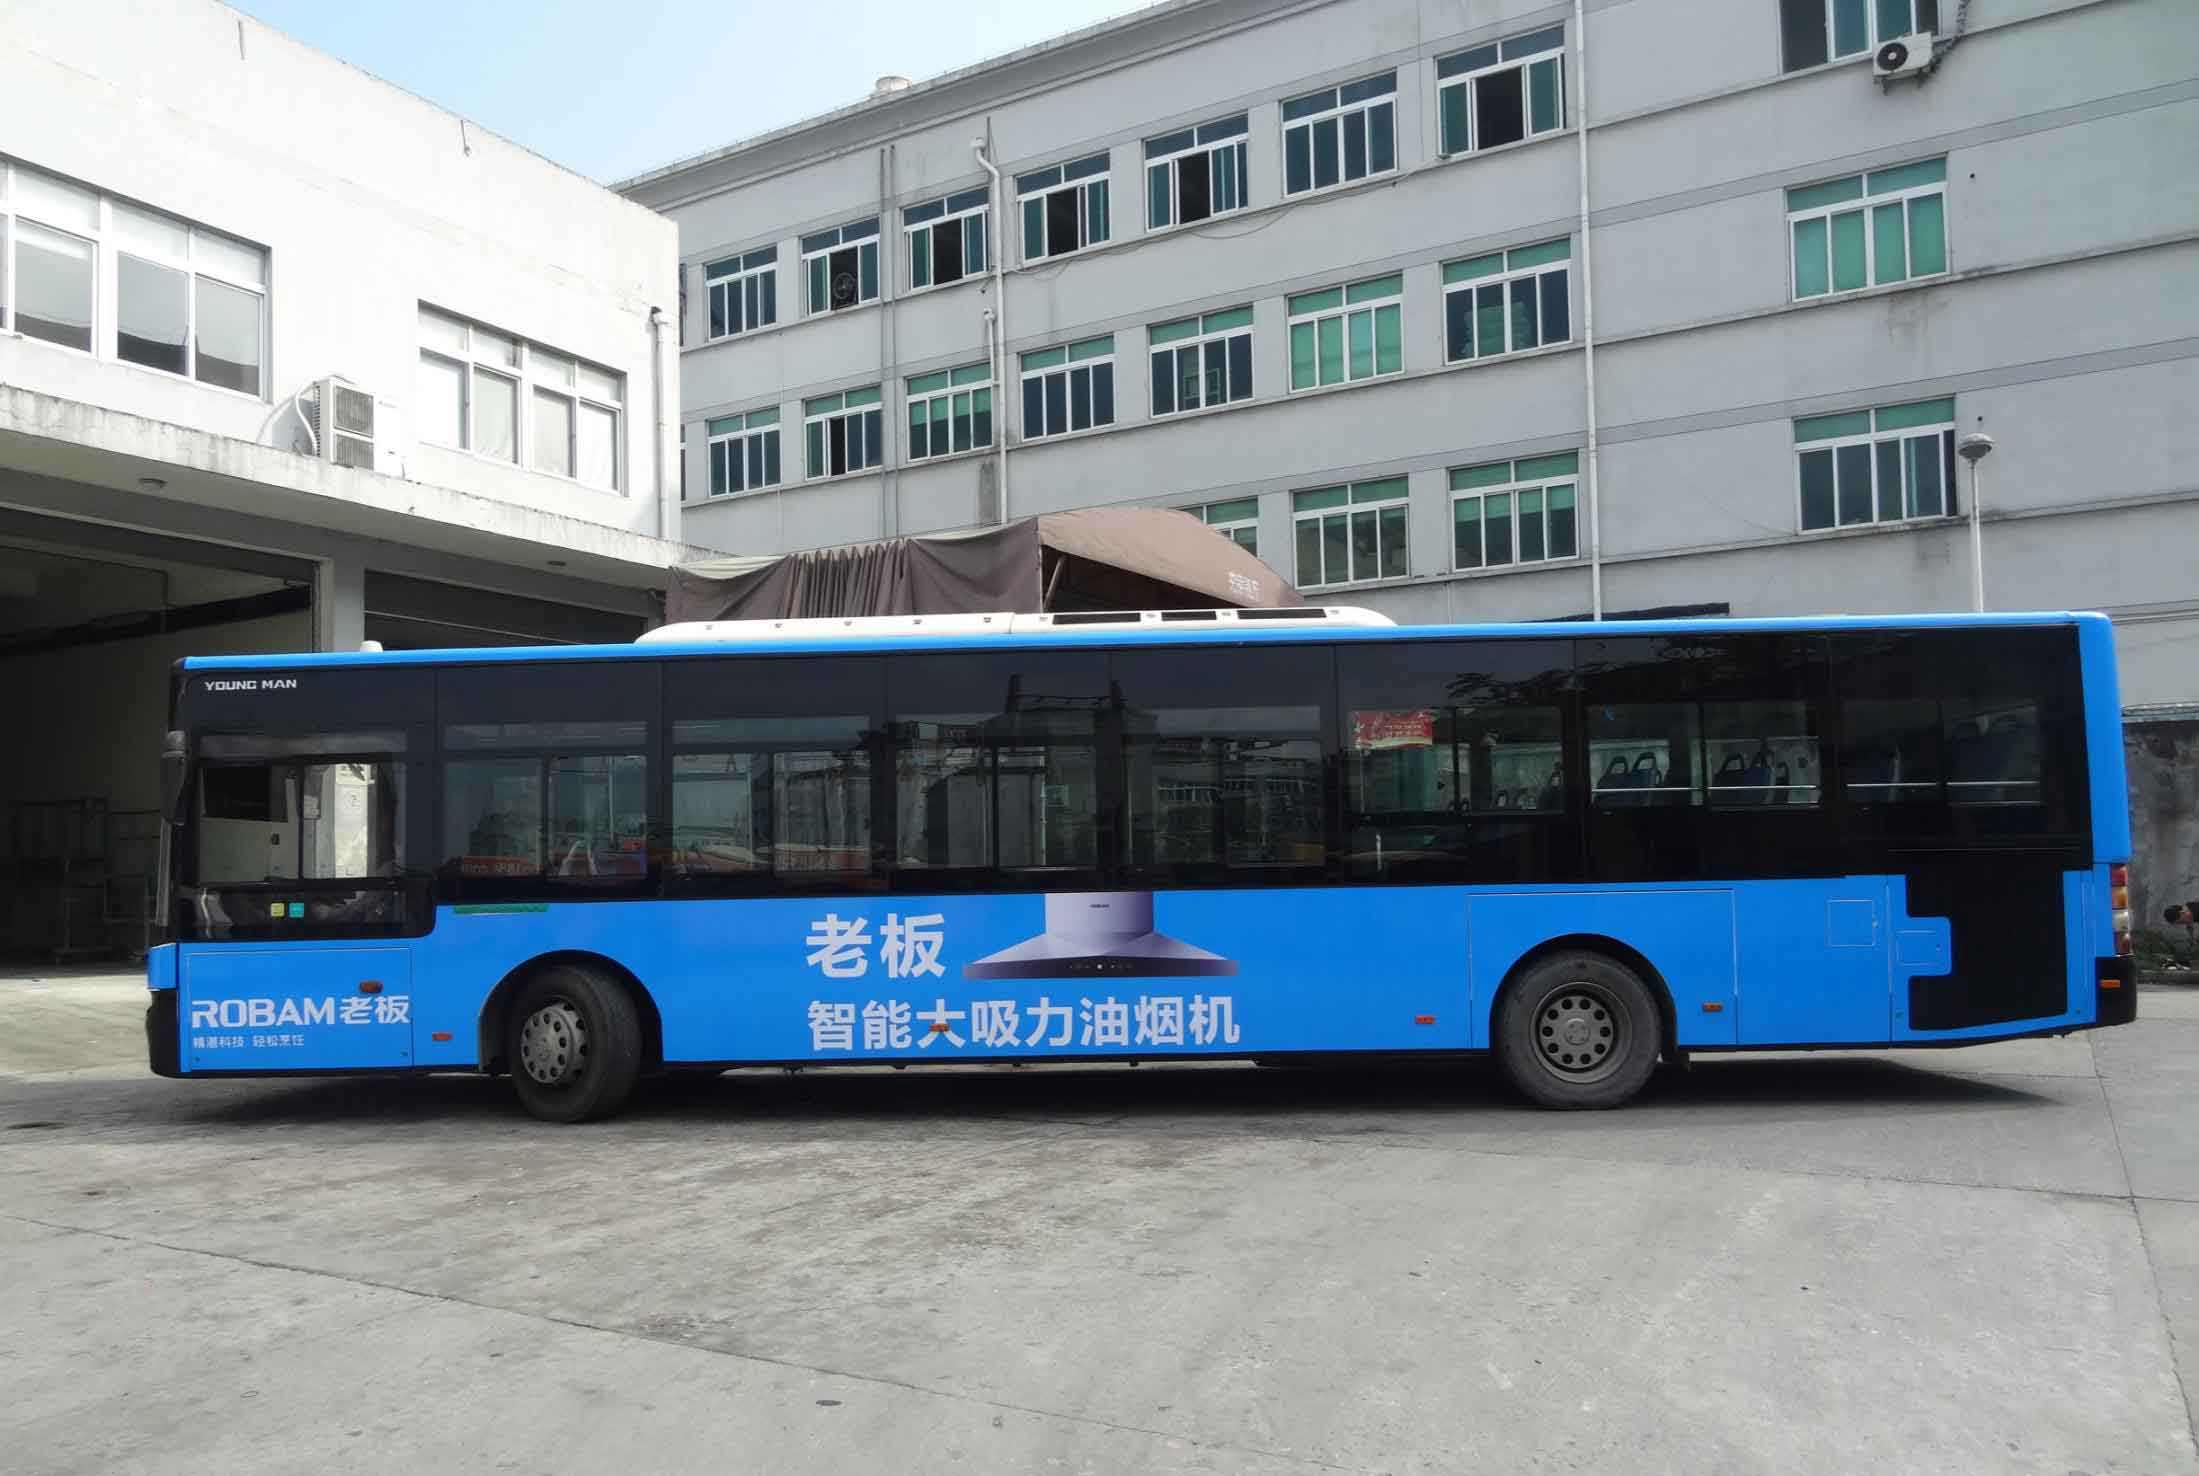 珠海市公交车身广告优势、公交广告策略方案、覆盖三大区